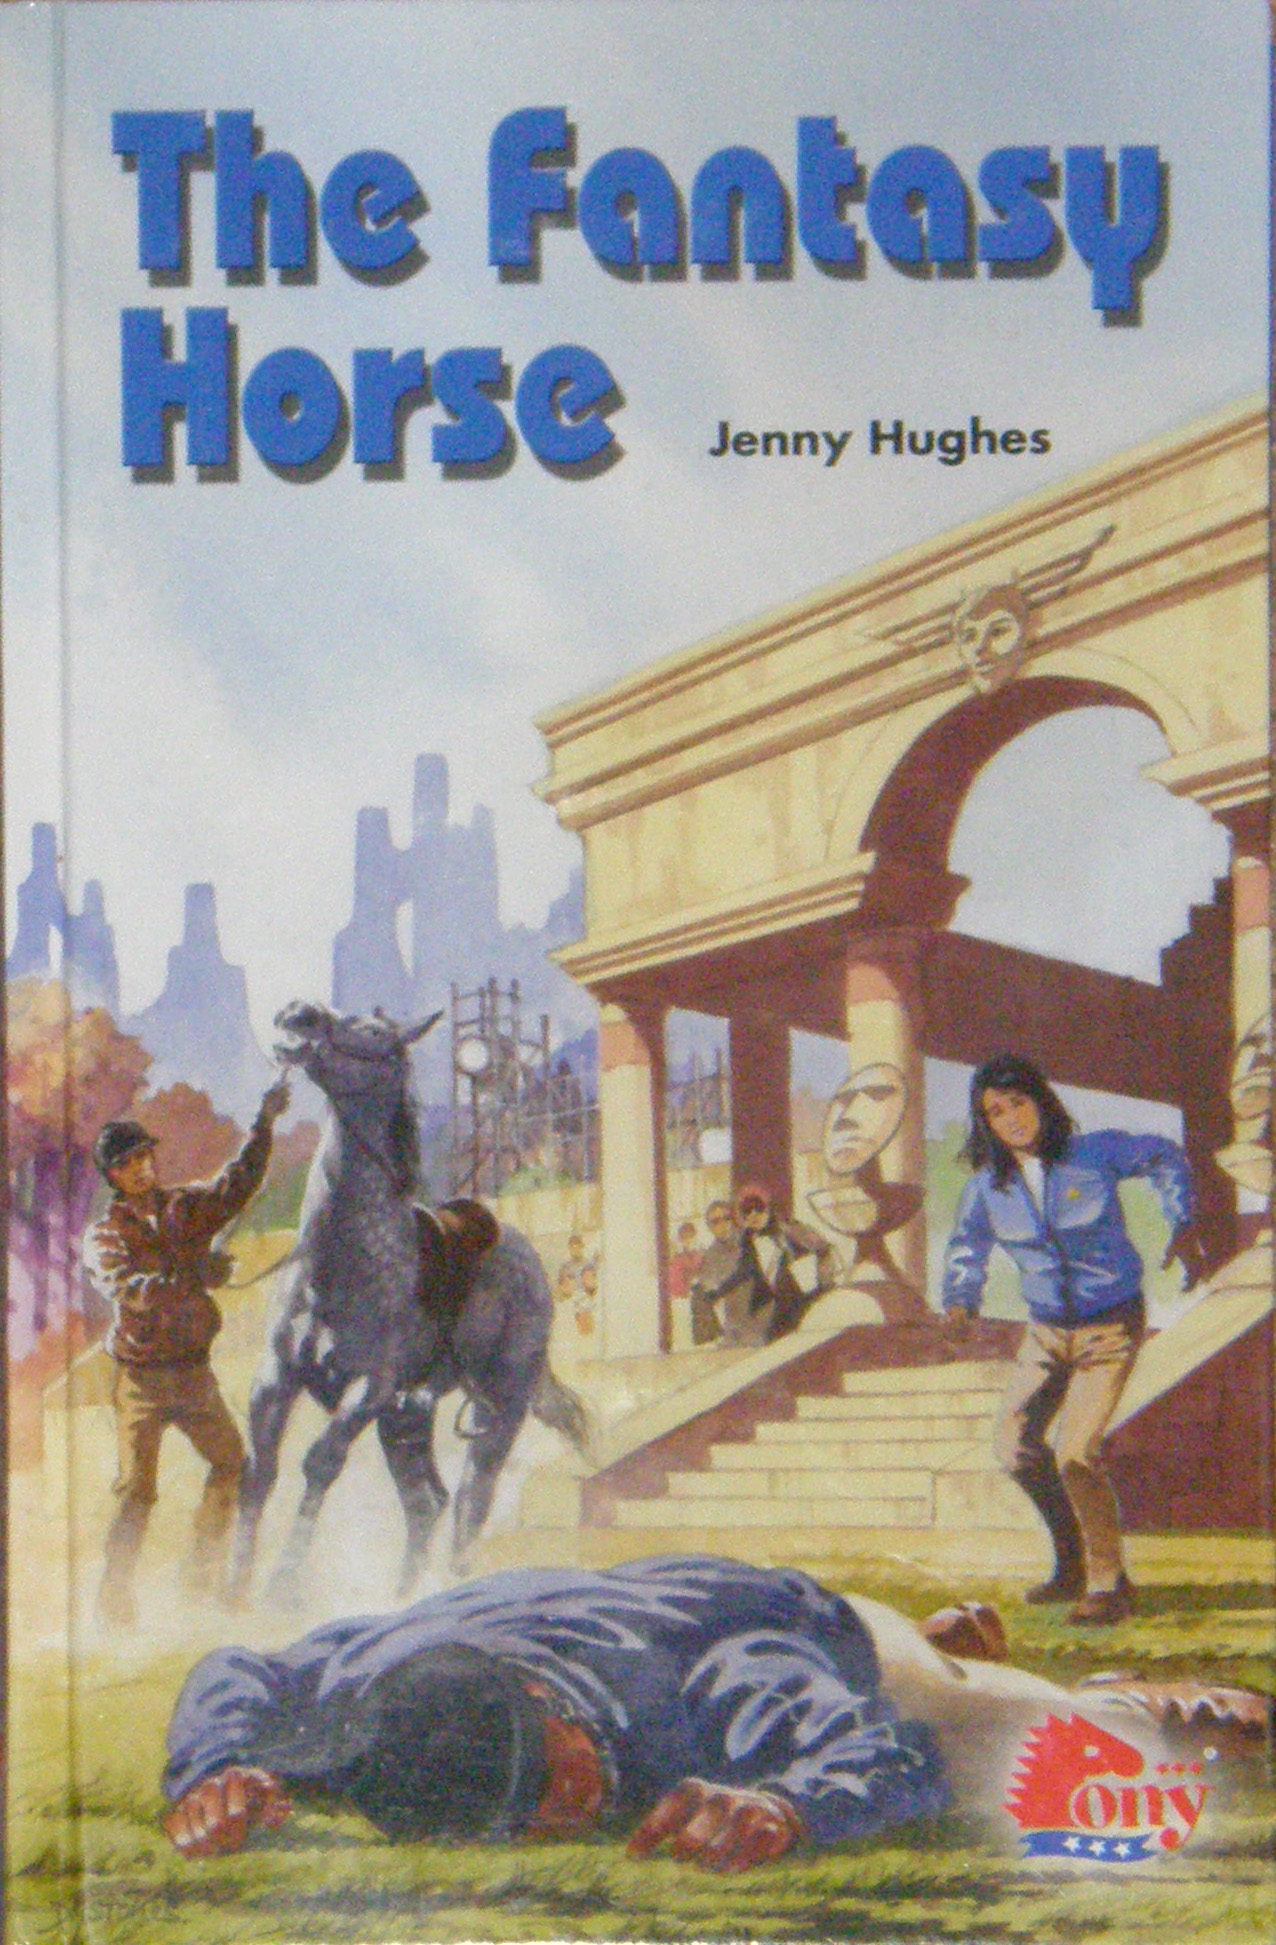 The Fantasy Horse Horse Book by Jenny Hughes